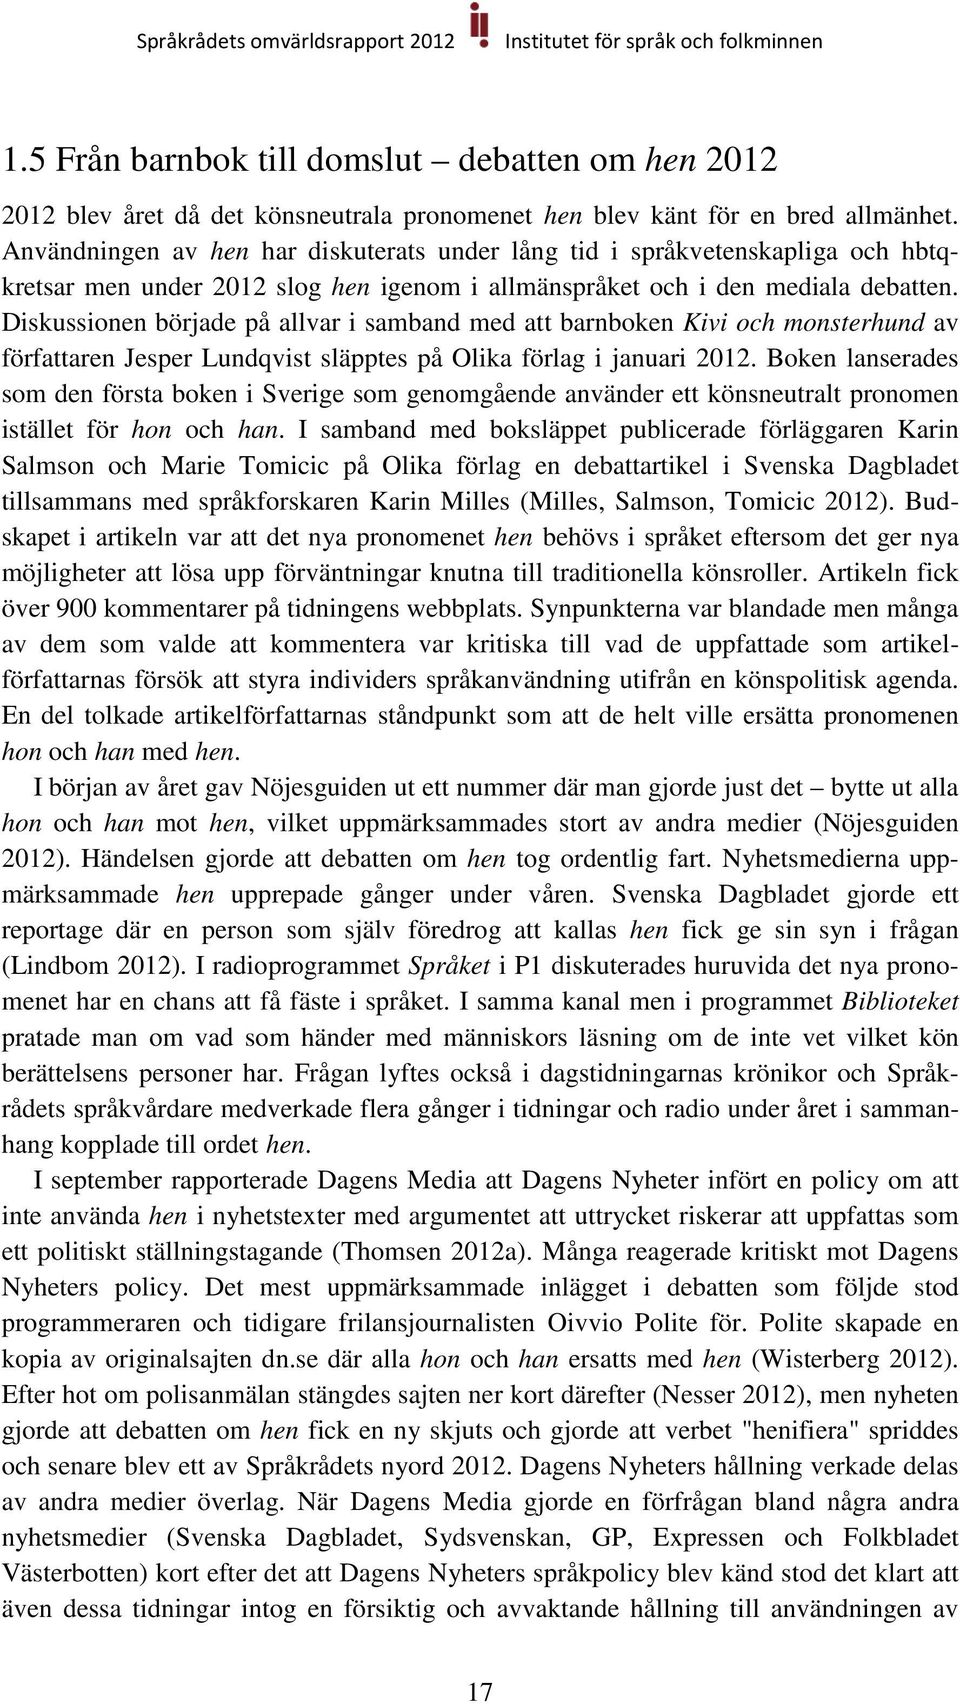 Diskussionen började på allvar i samband med att barnboken Kivi och monsterhund av författaren Jesper Lundqvist släpptes på Olika förlag i januari 2012.